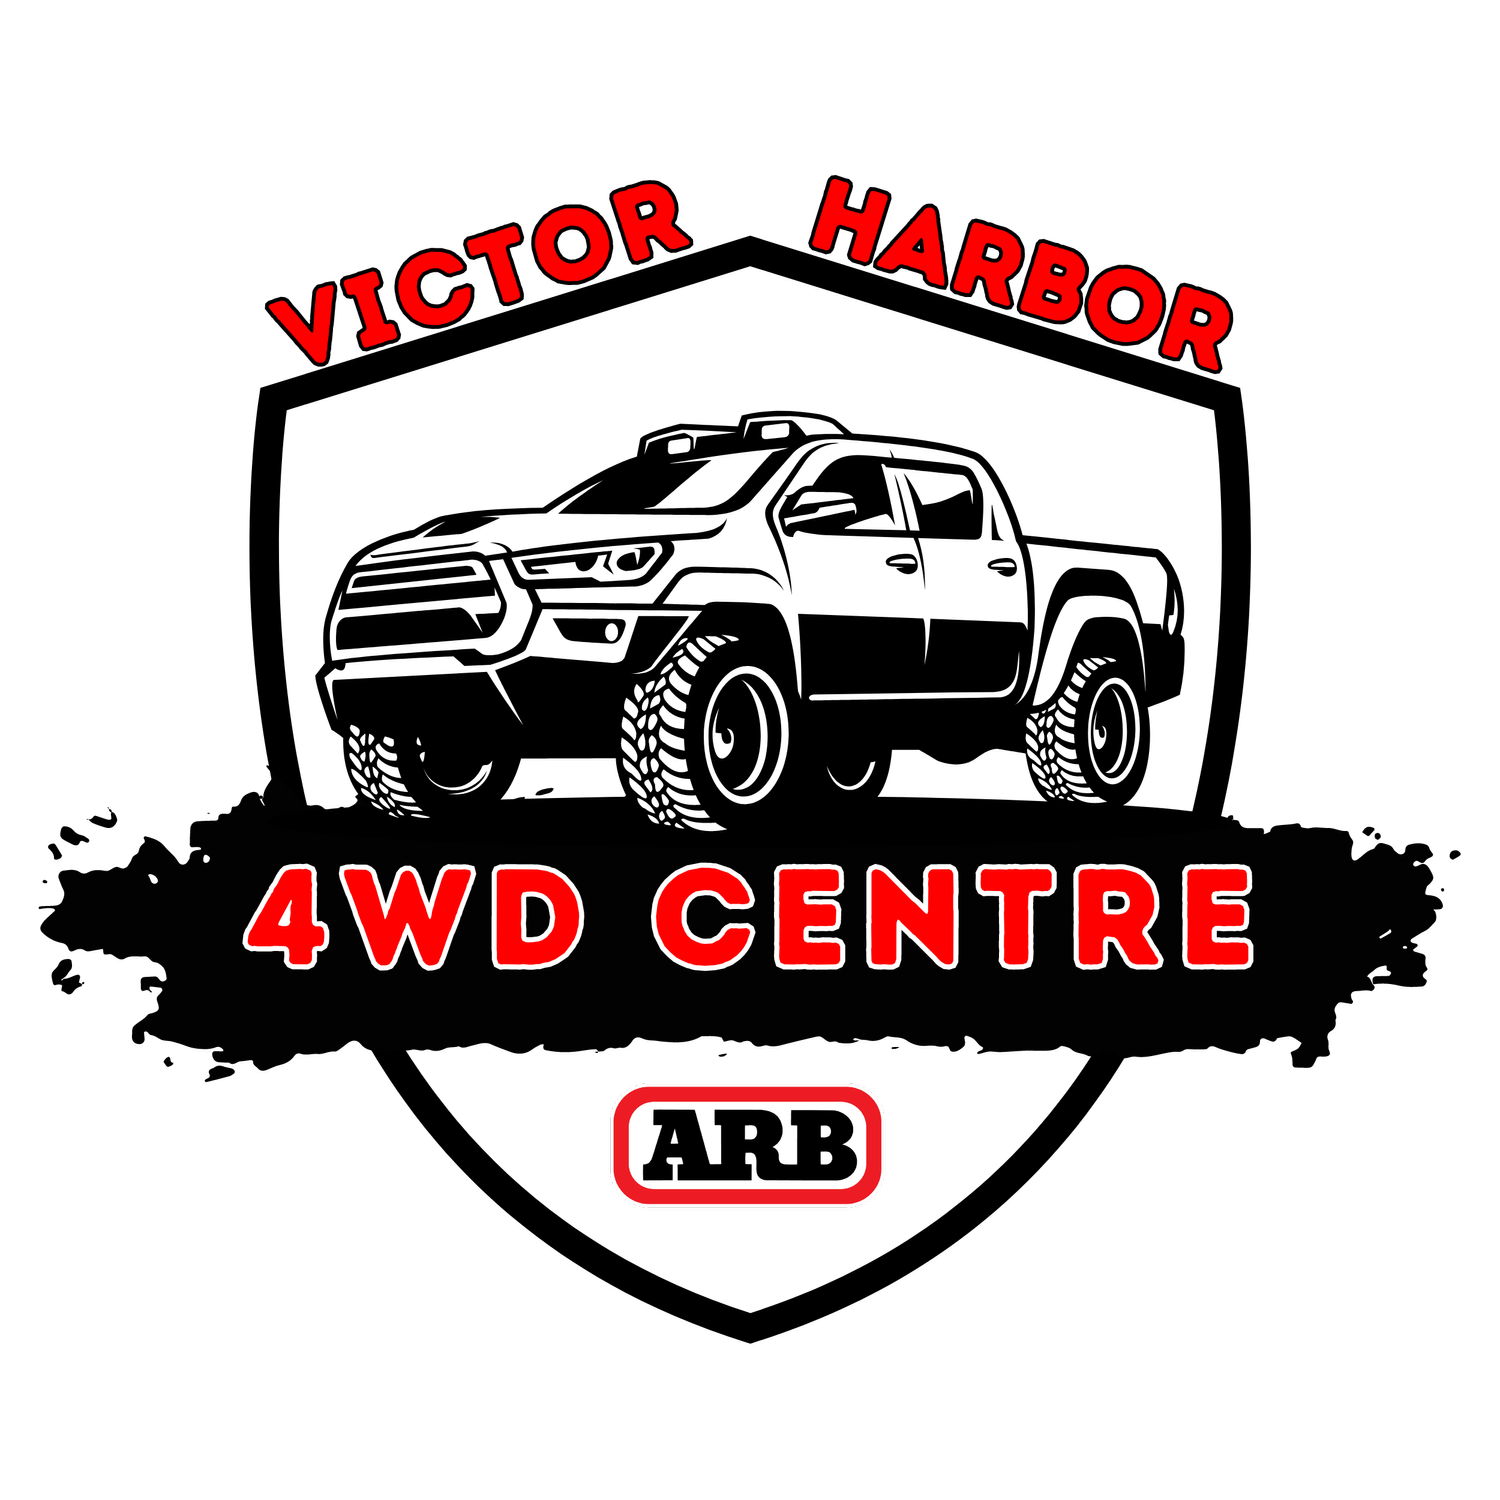 Victor Harbor 4WD Centre